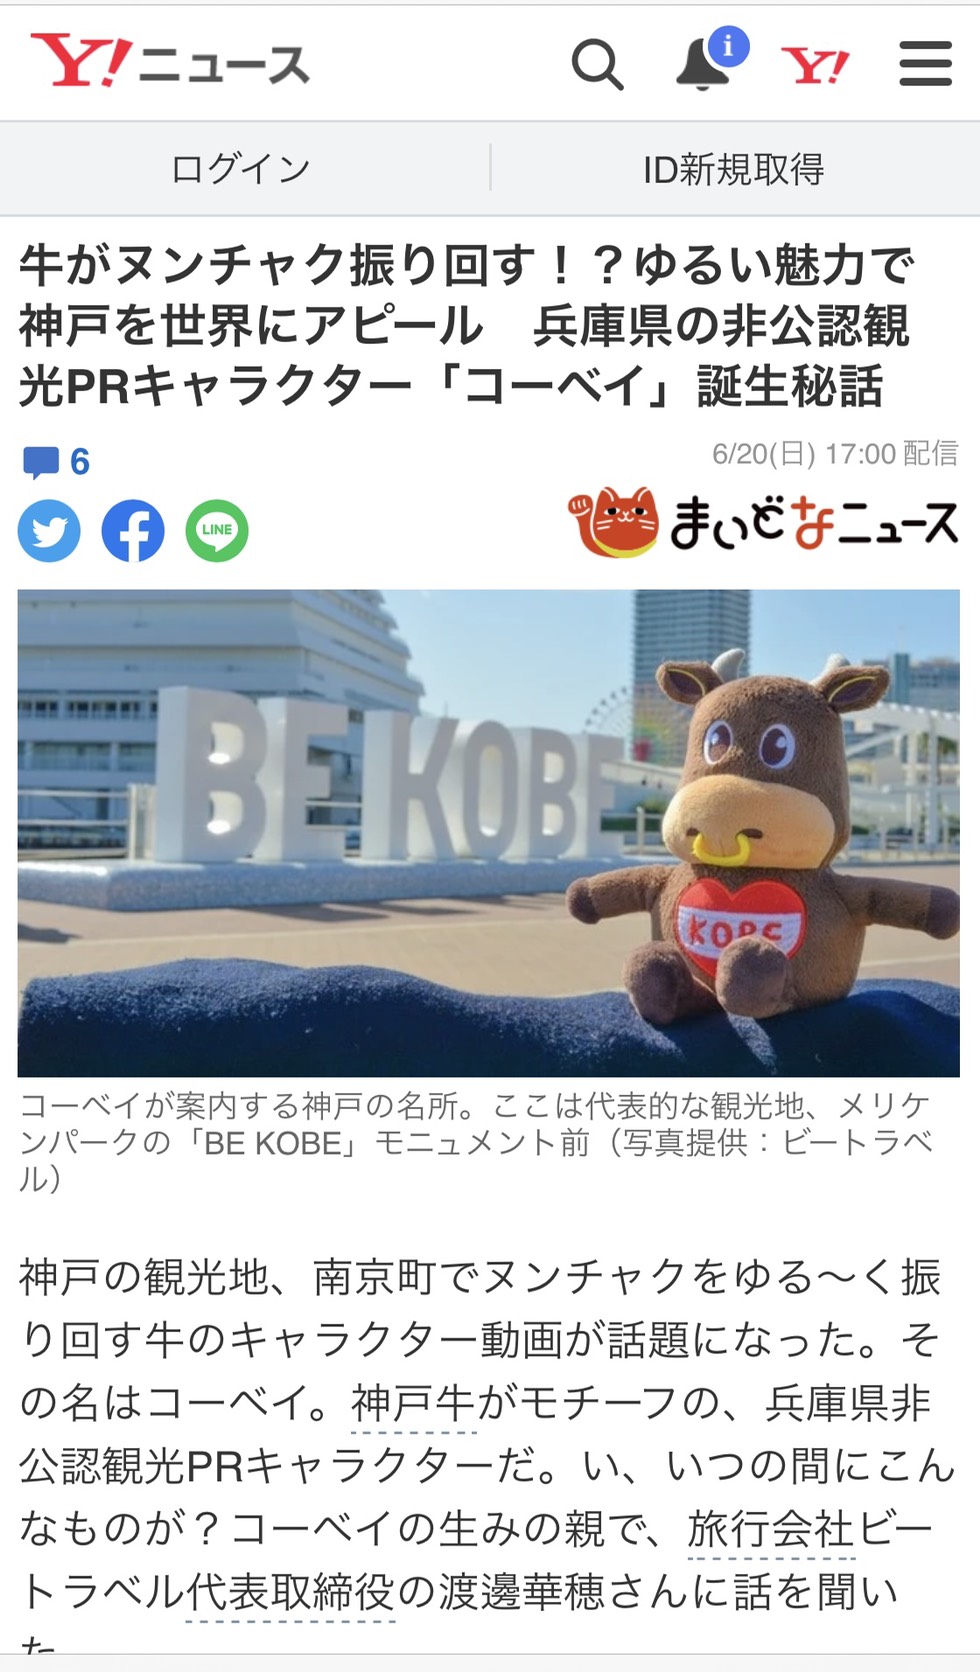 神戸新聞が運営する「まいどなニュース」「Yahooニュース」にコーベイが掲載されました